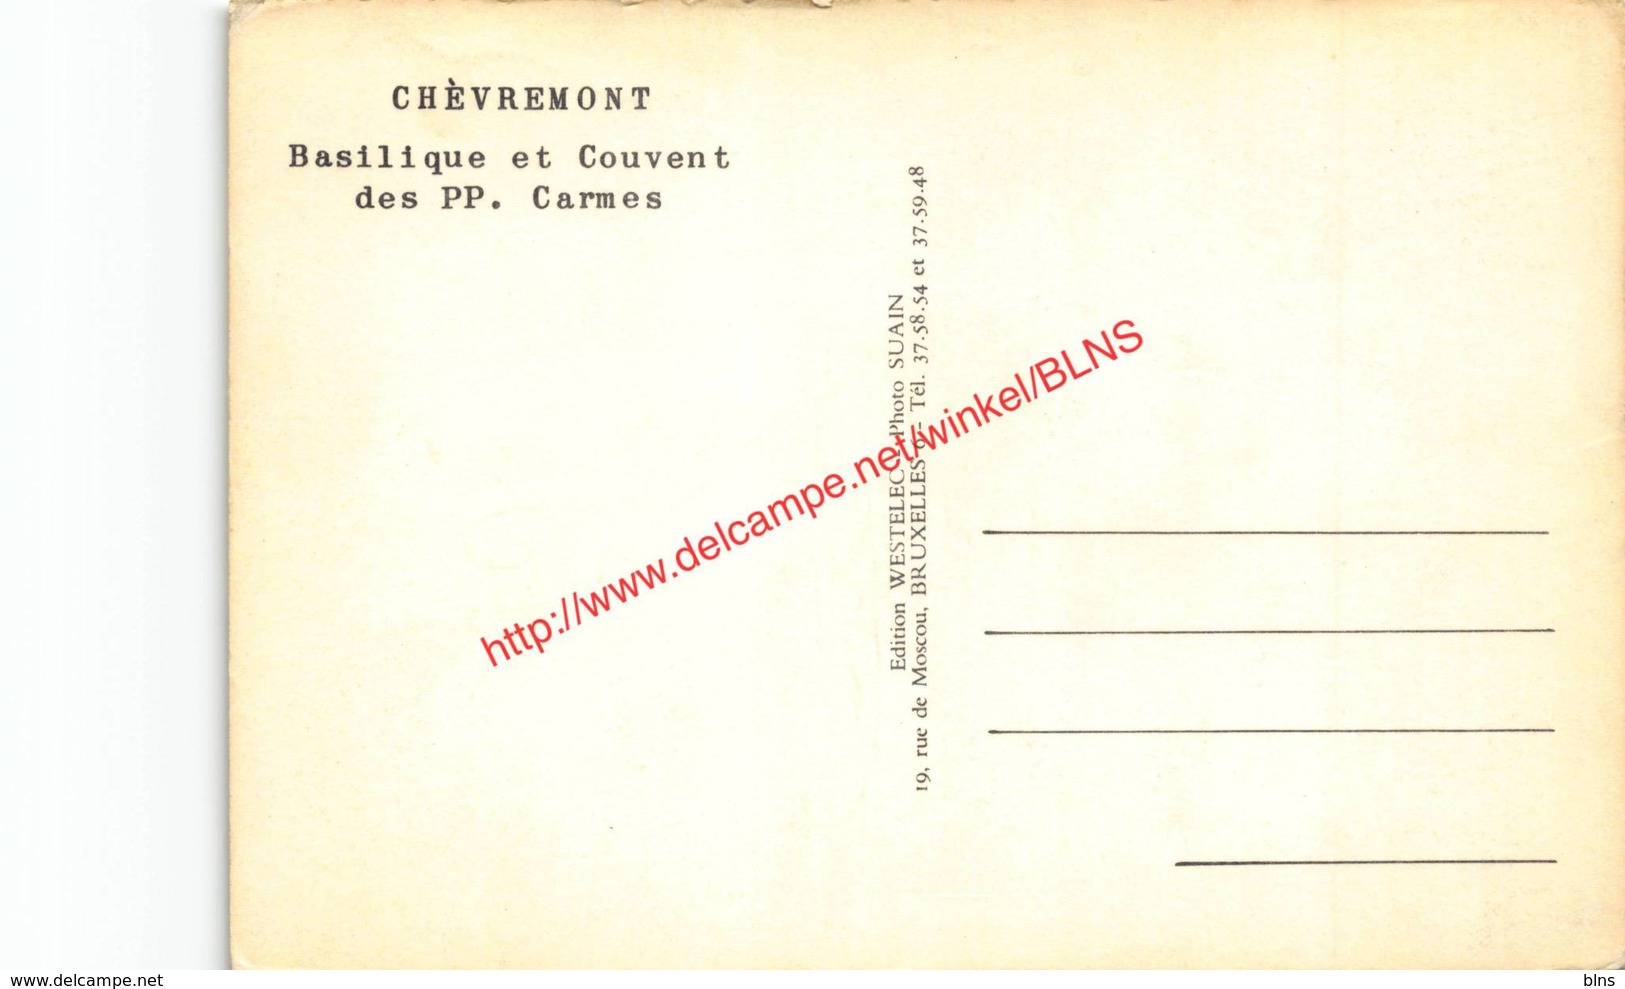 Basilique Et Couvent Des PP. Carmes - Chèvremont - Chaudfontaine